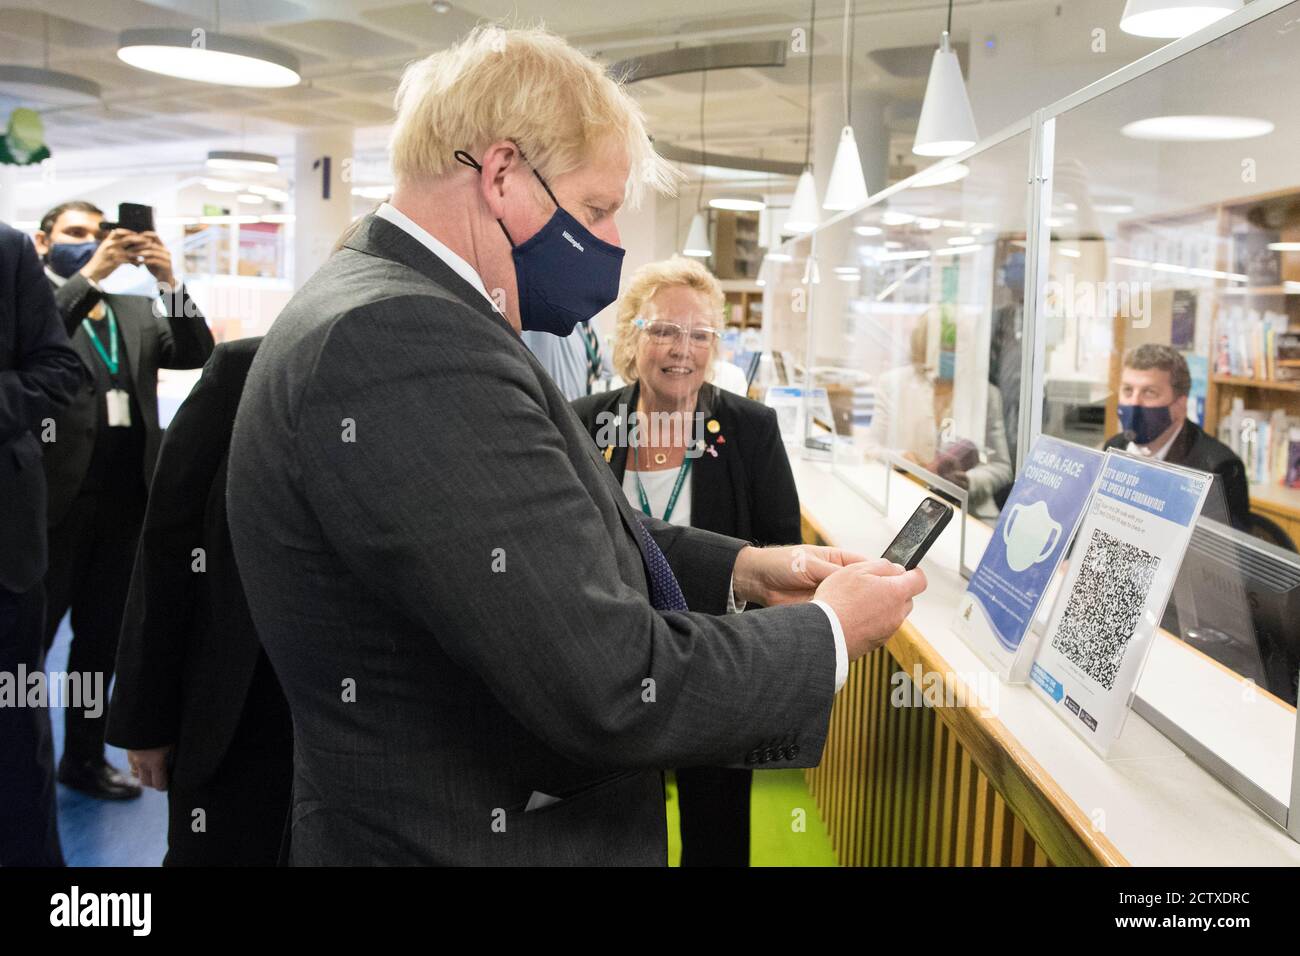 Le Premier ministre Boris Johnson scanne son application du coronavirus NHS à la bibliothèque Uxbridge lors d'une visite où il a rencontré des acheteurs et des commerçants dans sa circonscription d'Uxbridge, à l'ouest de Londres. Banque D'Images